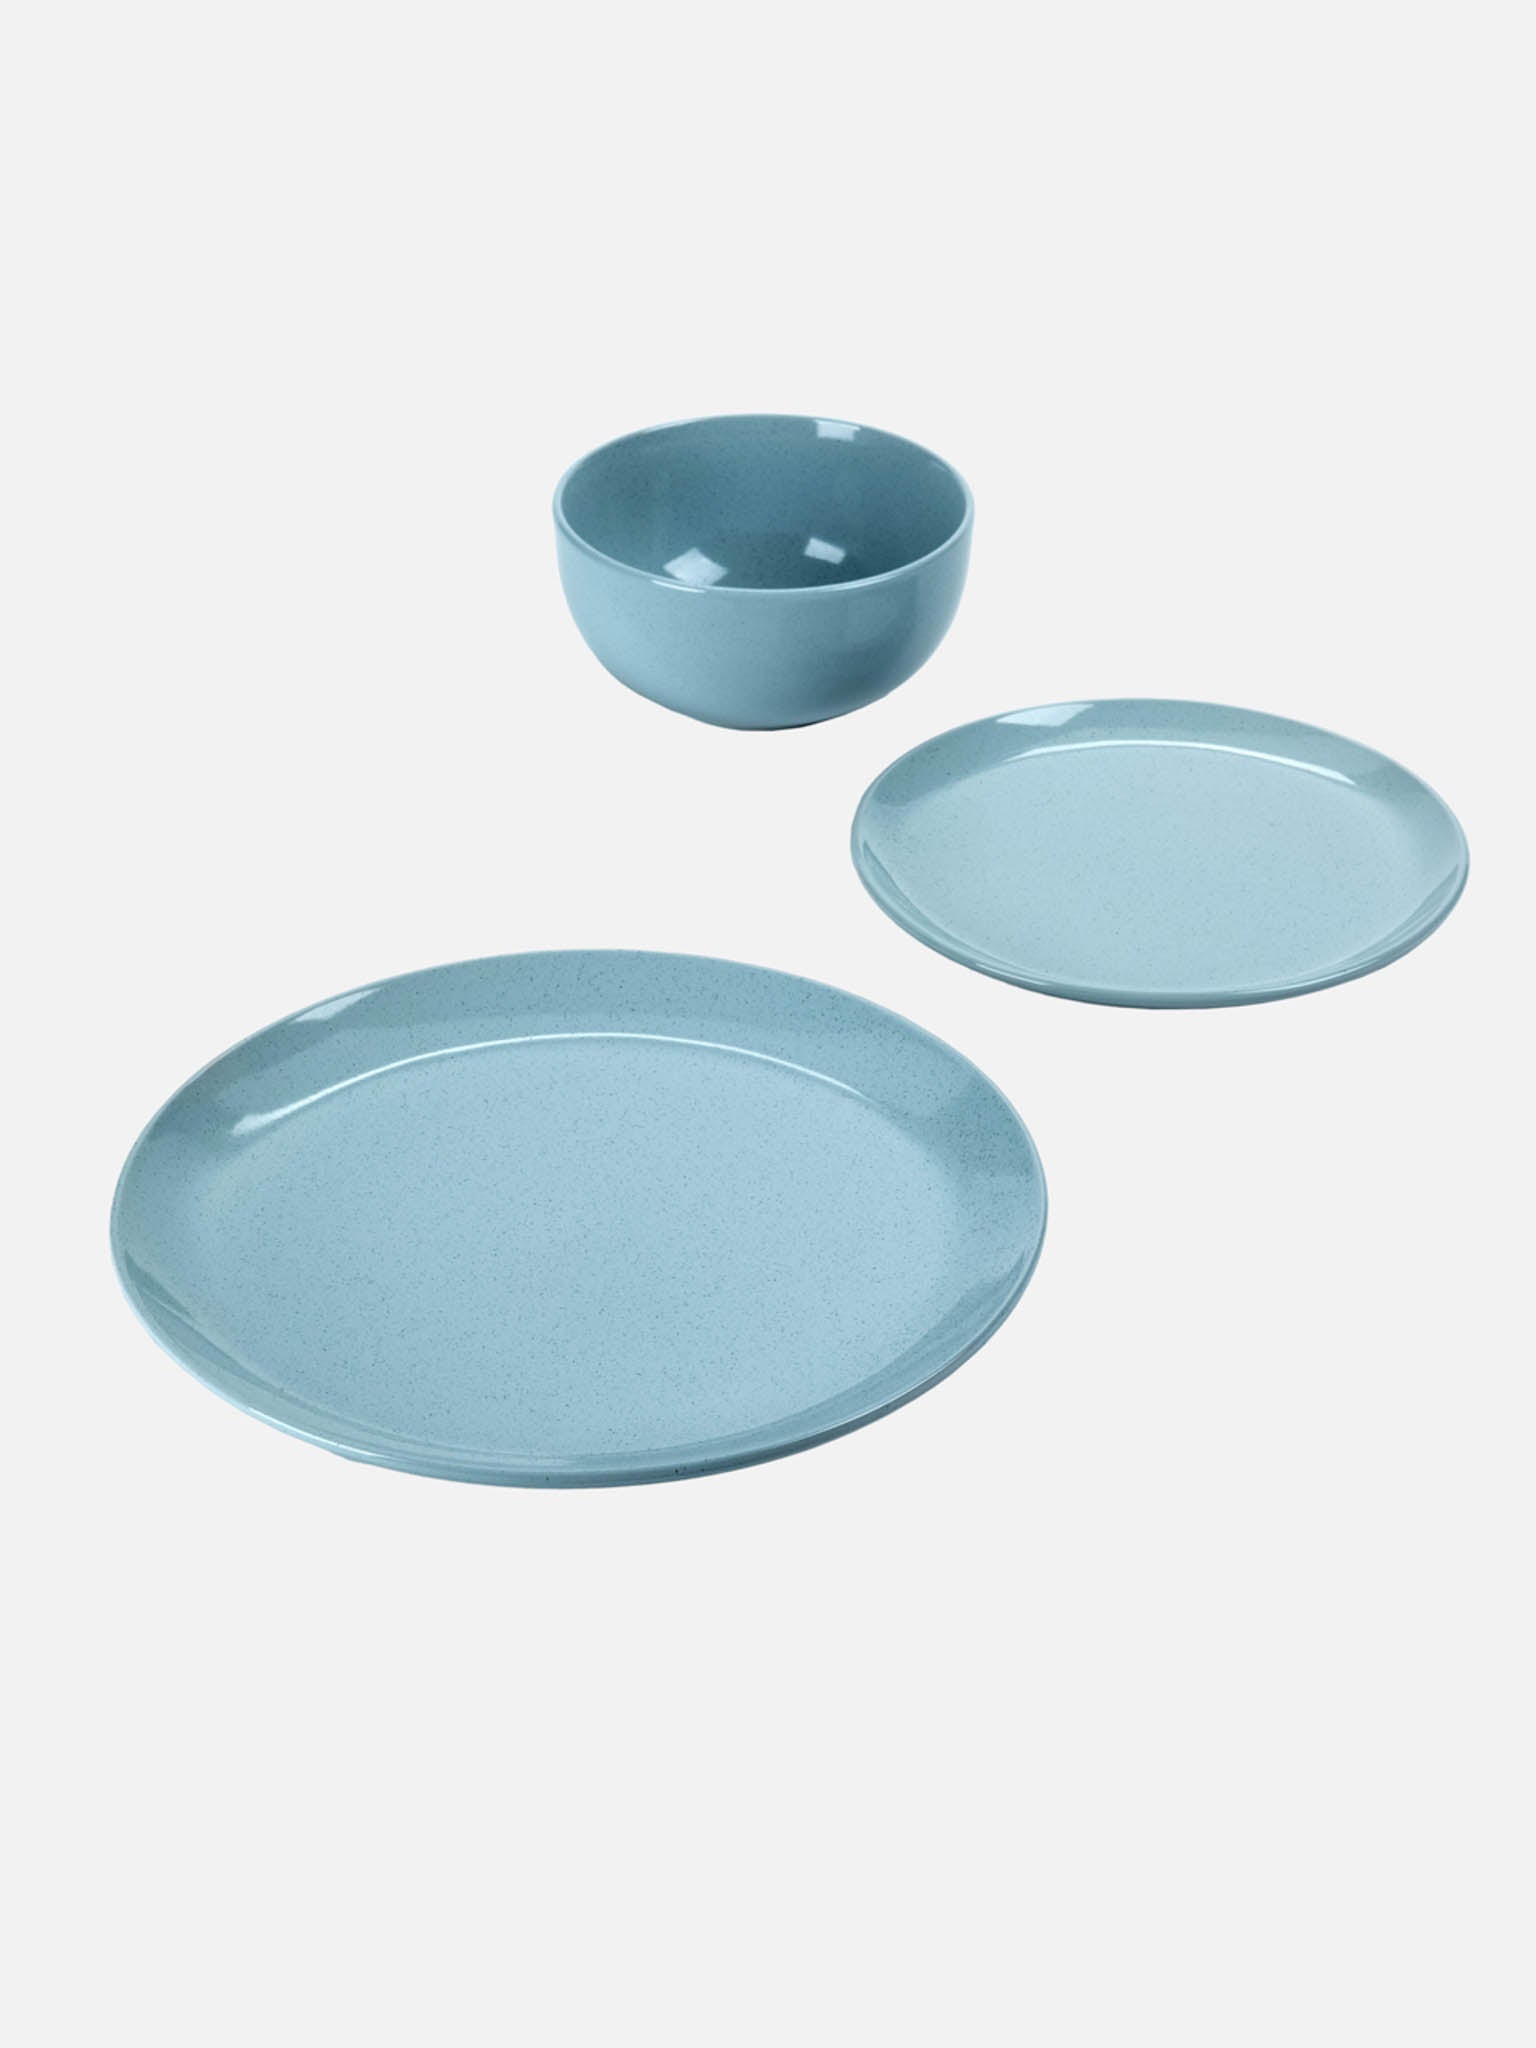 Tstf Ceramic Dinner Plate